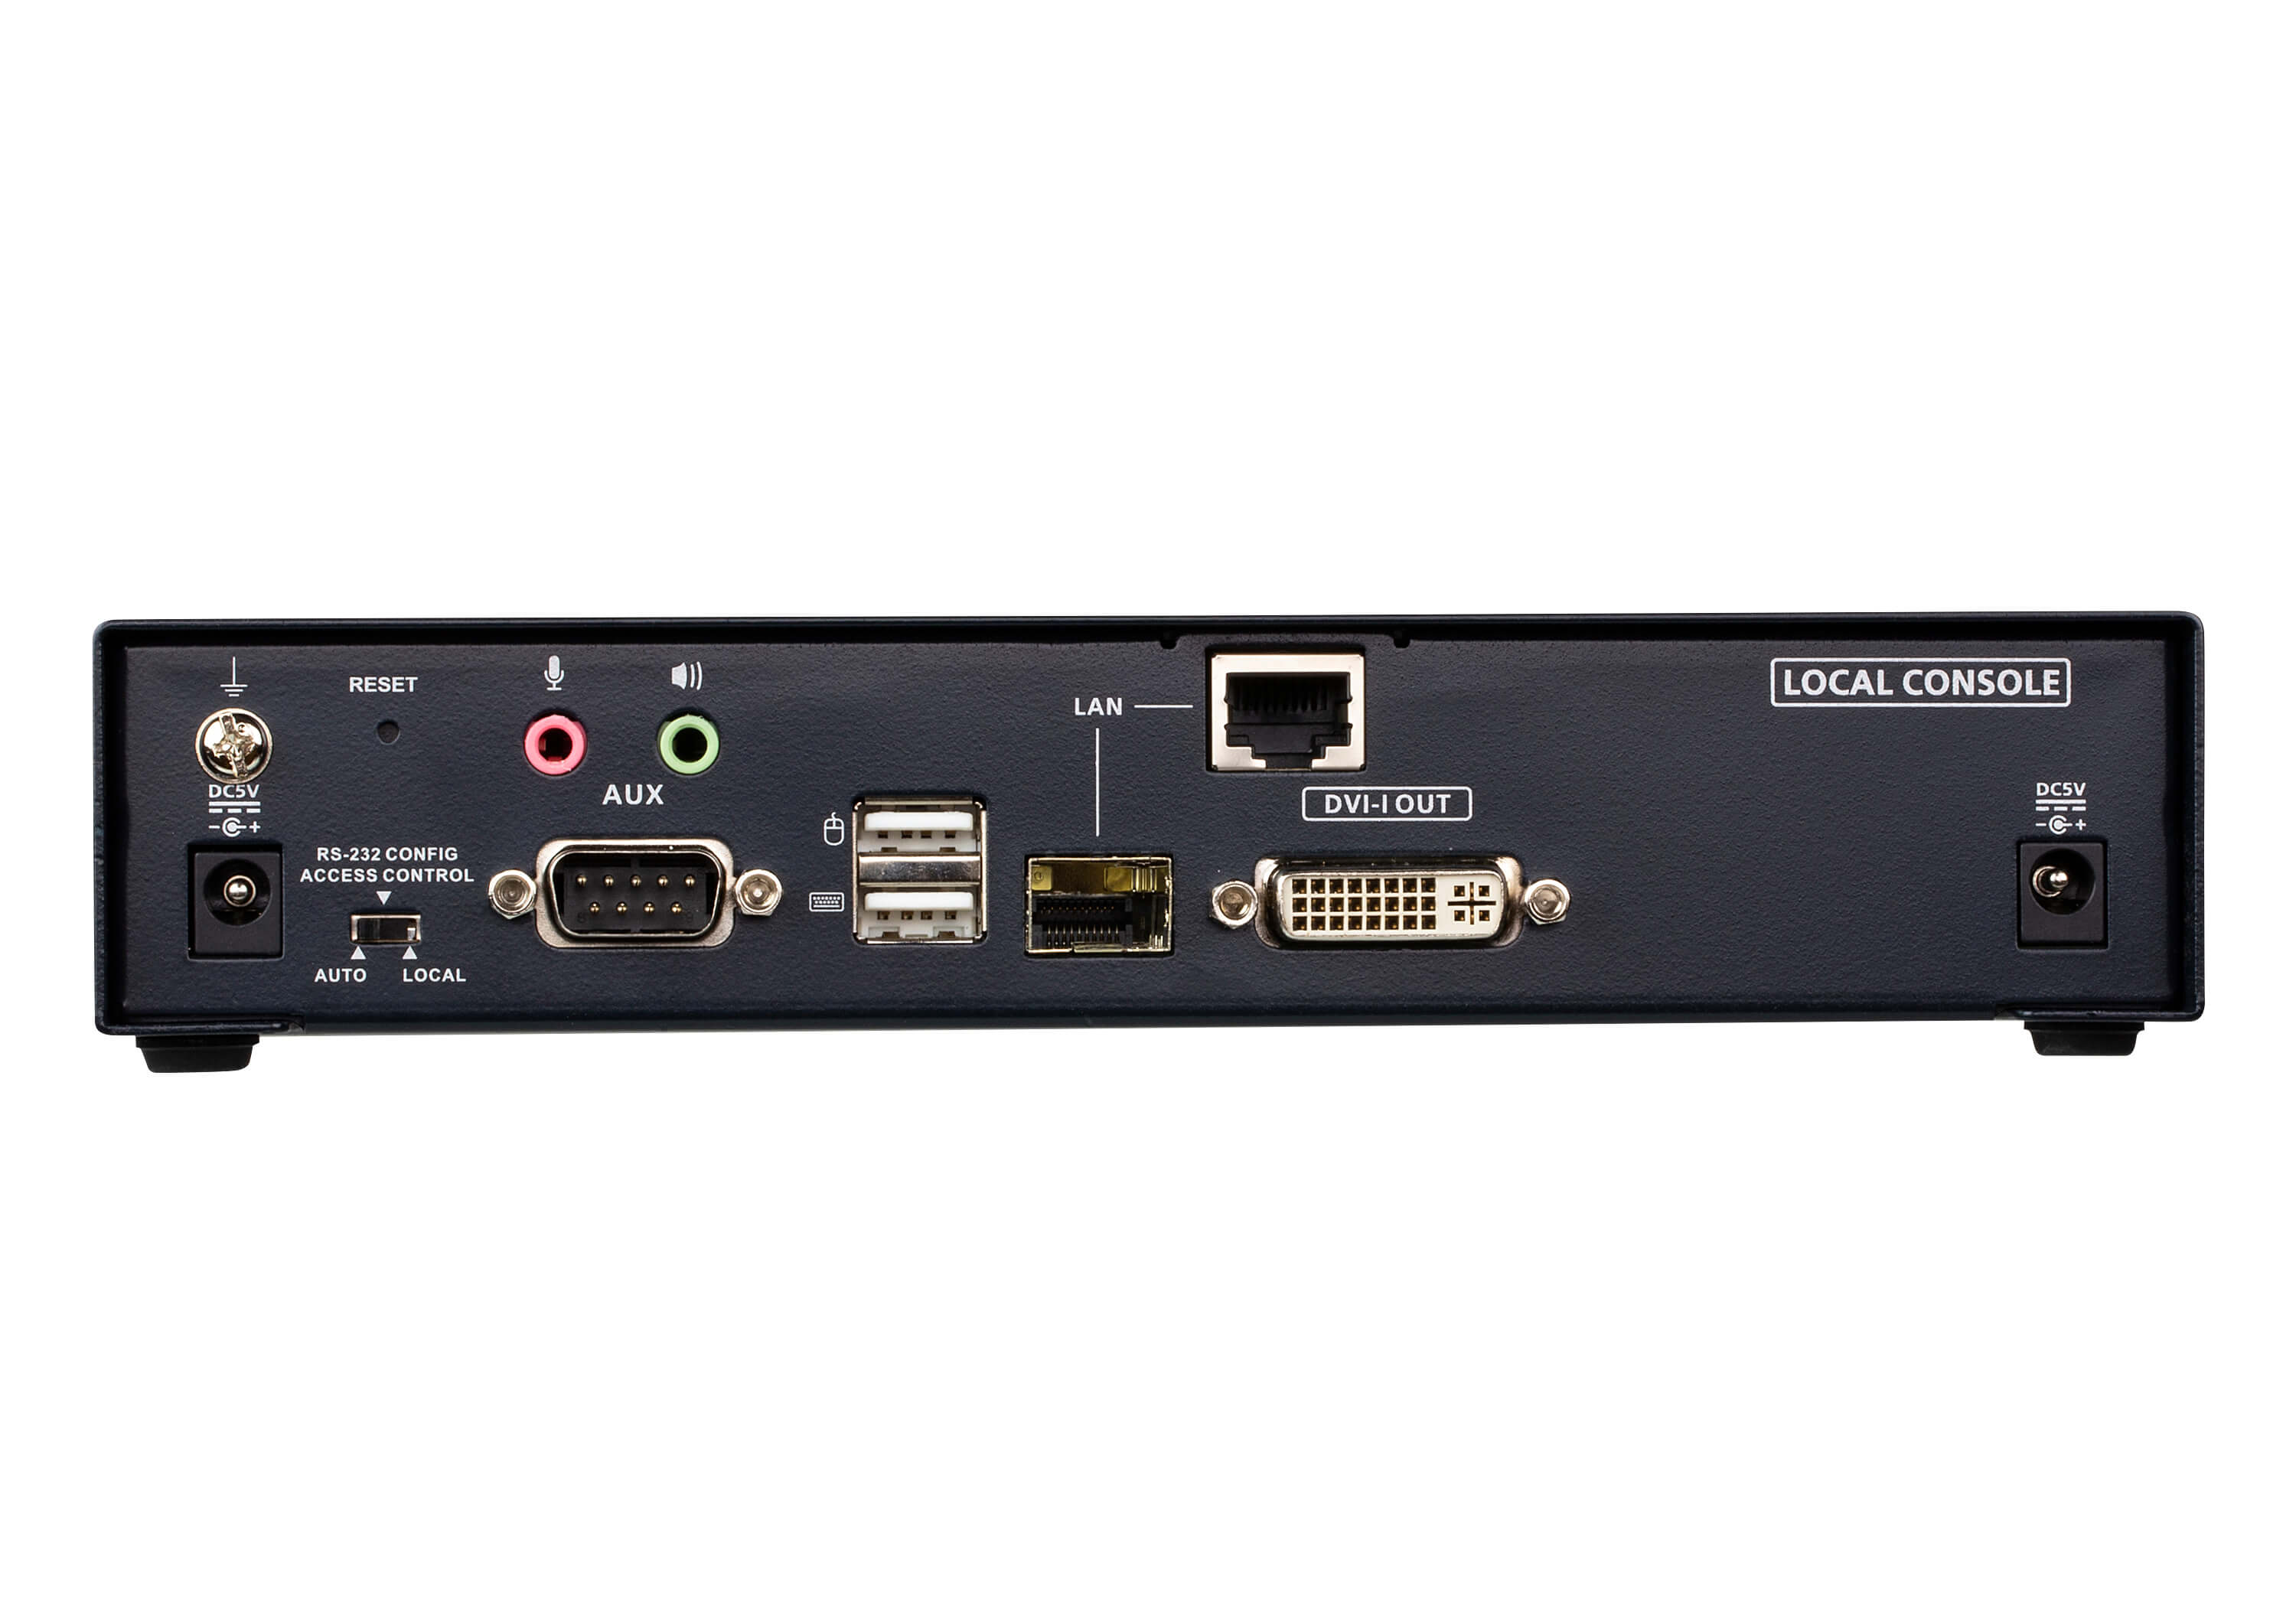 取寄 ATEN KE6900AT DVI-I シングルディスプレイ IP-KVMトランスミッター（デュアル電源/LAN対応）